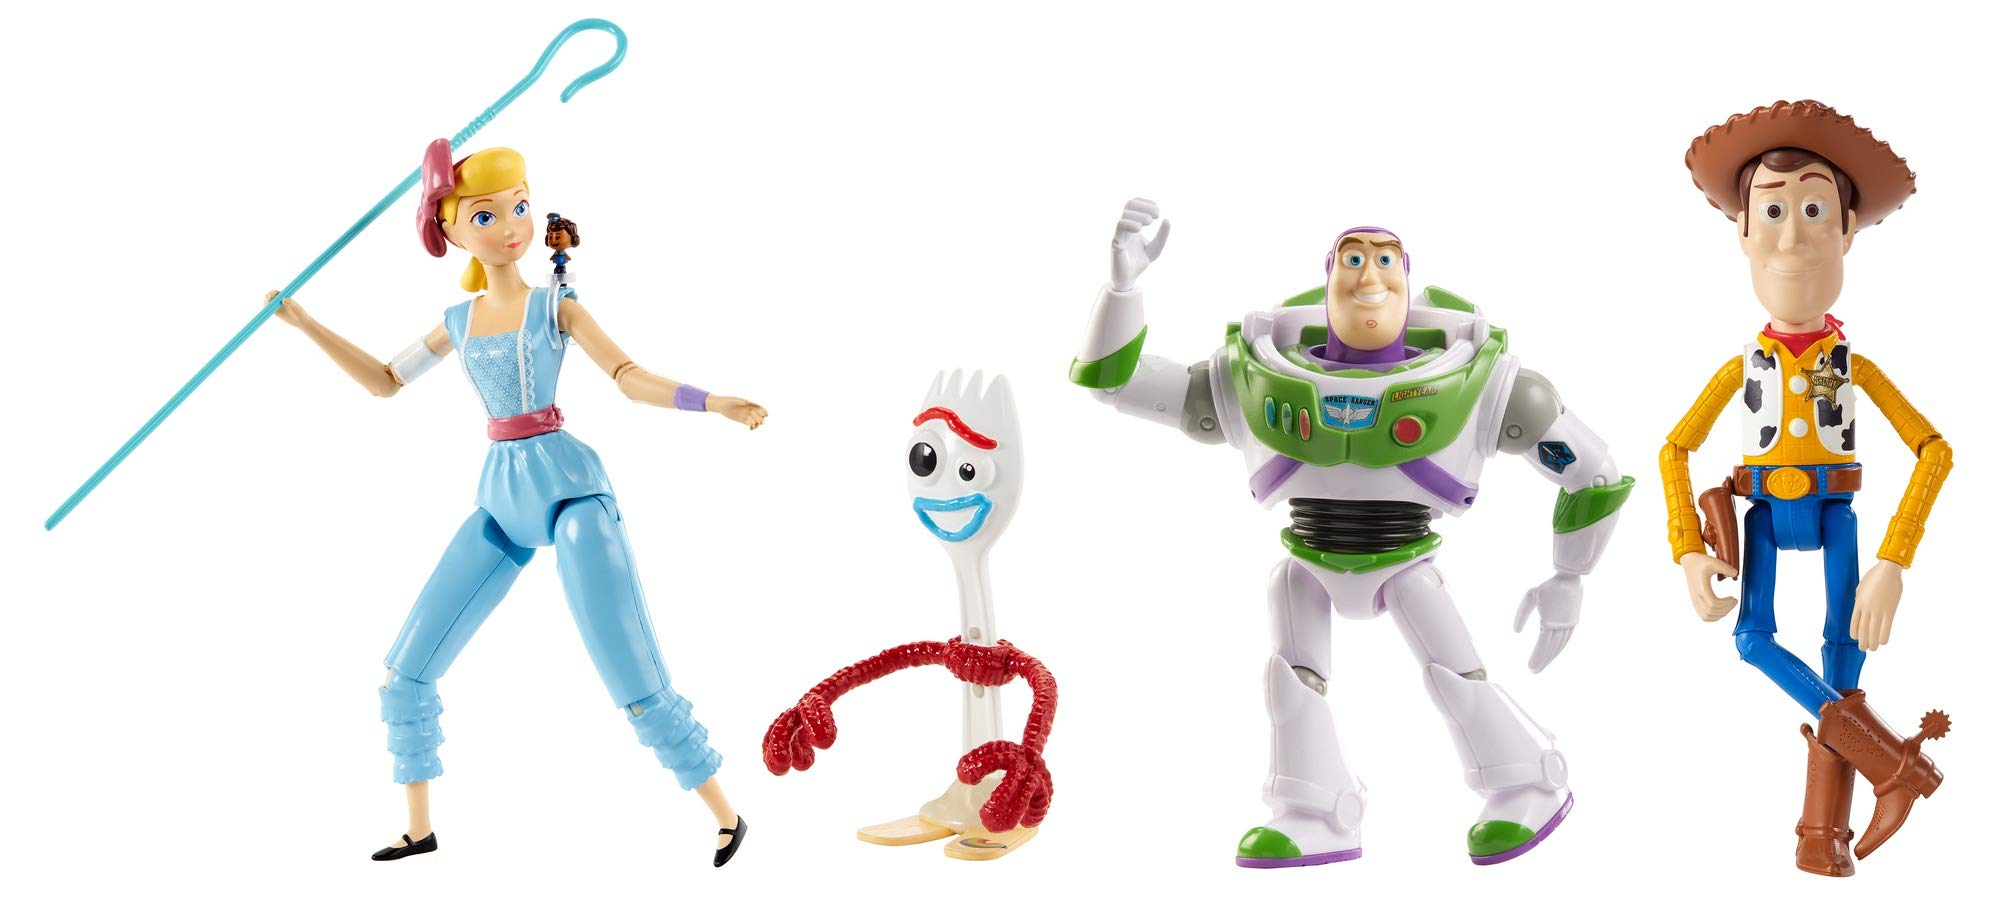 Disney Pixar Toy Story Adventure Pack